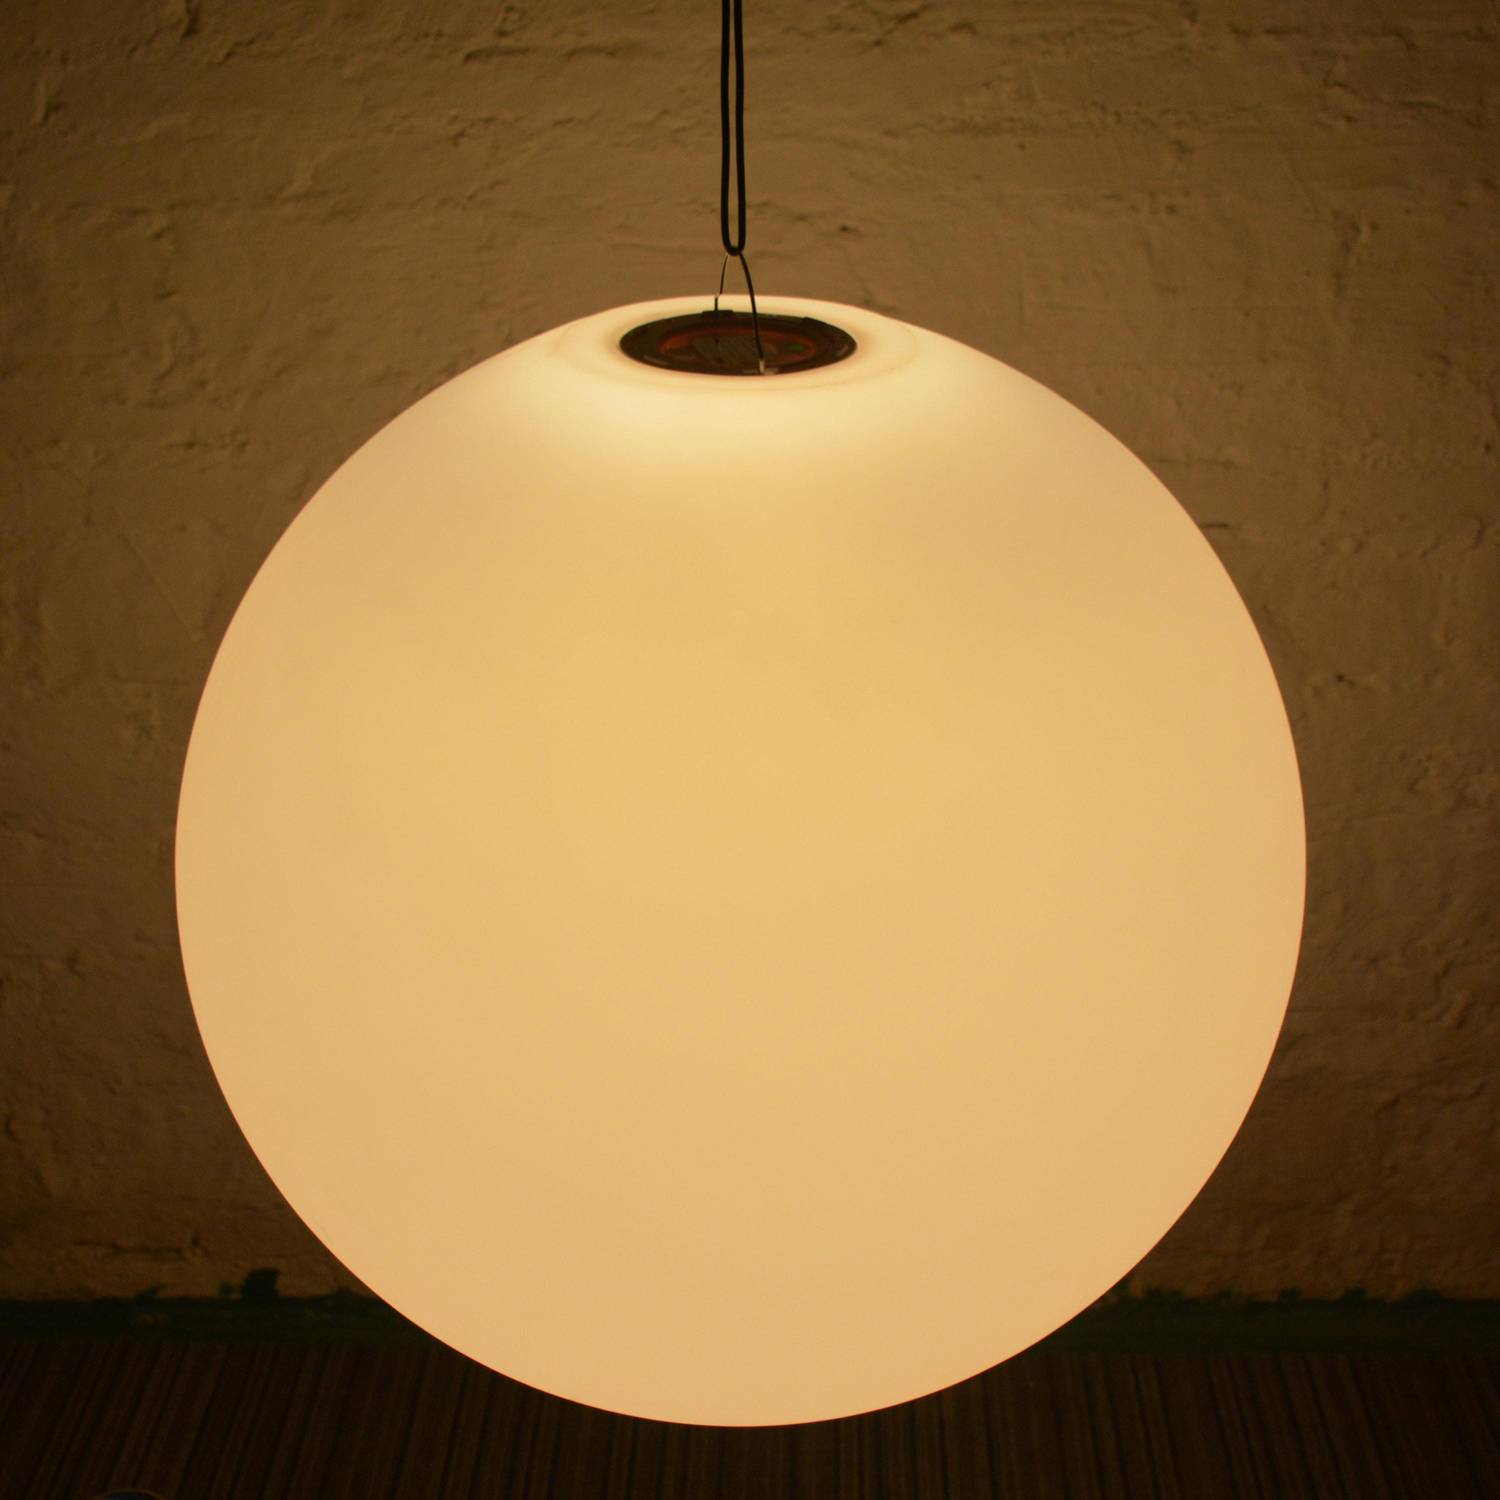 Boule LED 40cm – Sphère décorative lumineuse, Ø40cm, blanc chaud, commande à distance Photo7